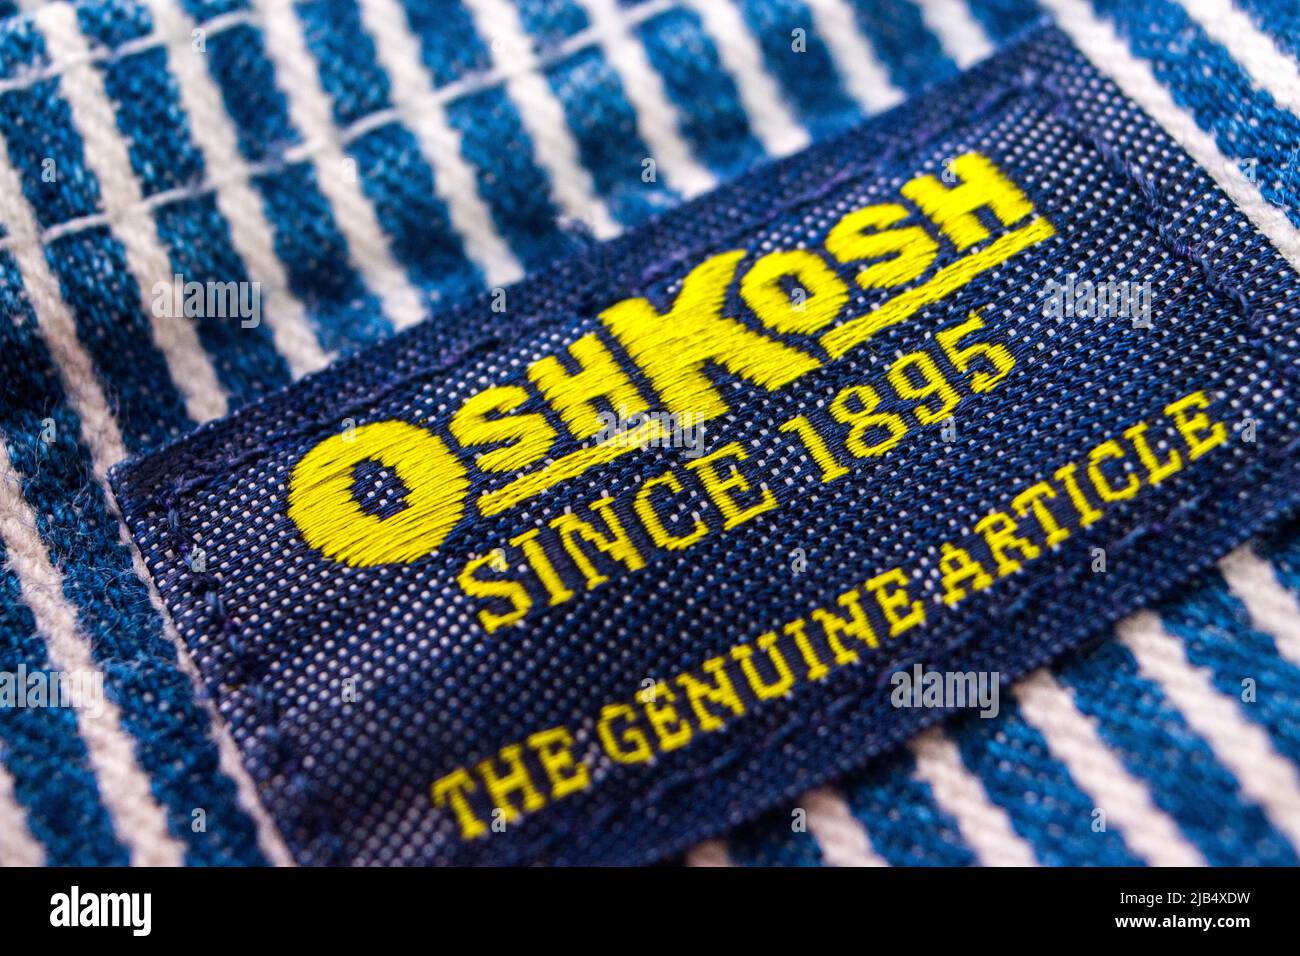 La marque Oshkosh sur ses salopettes à rayures hickory. Oshkosh B'gosh est  une société américaine de vêtements fondée à Oshkosh, Wisconsin, en 1895  Photo Stock - Alamy